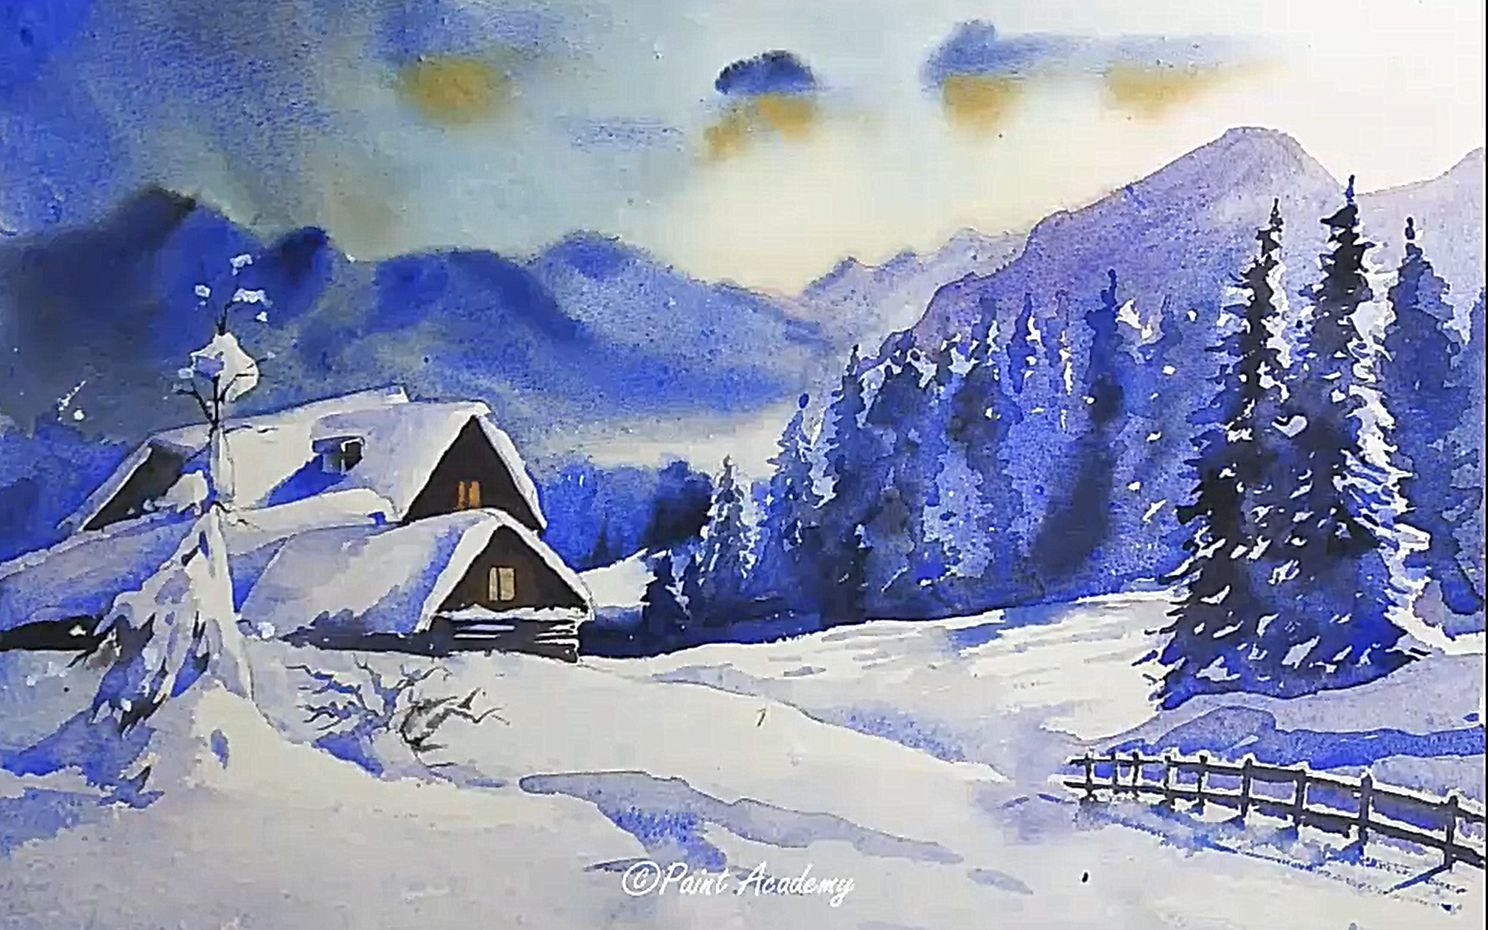 【水彩】水彩画中的冬季风景画,paint academy分享